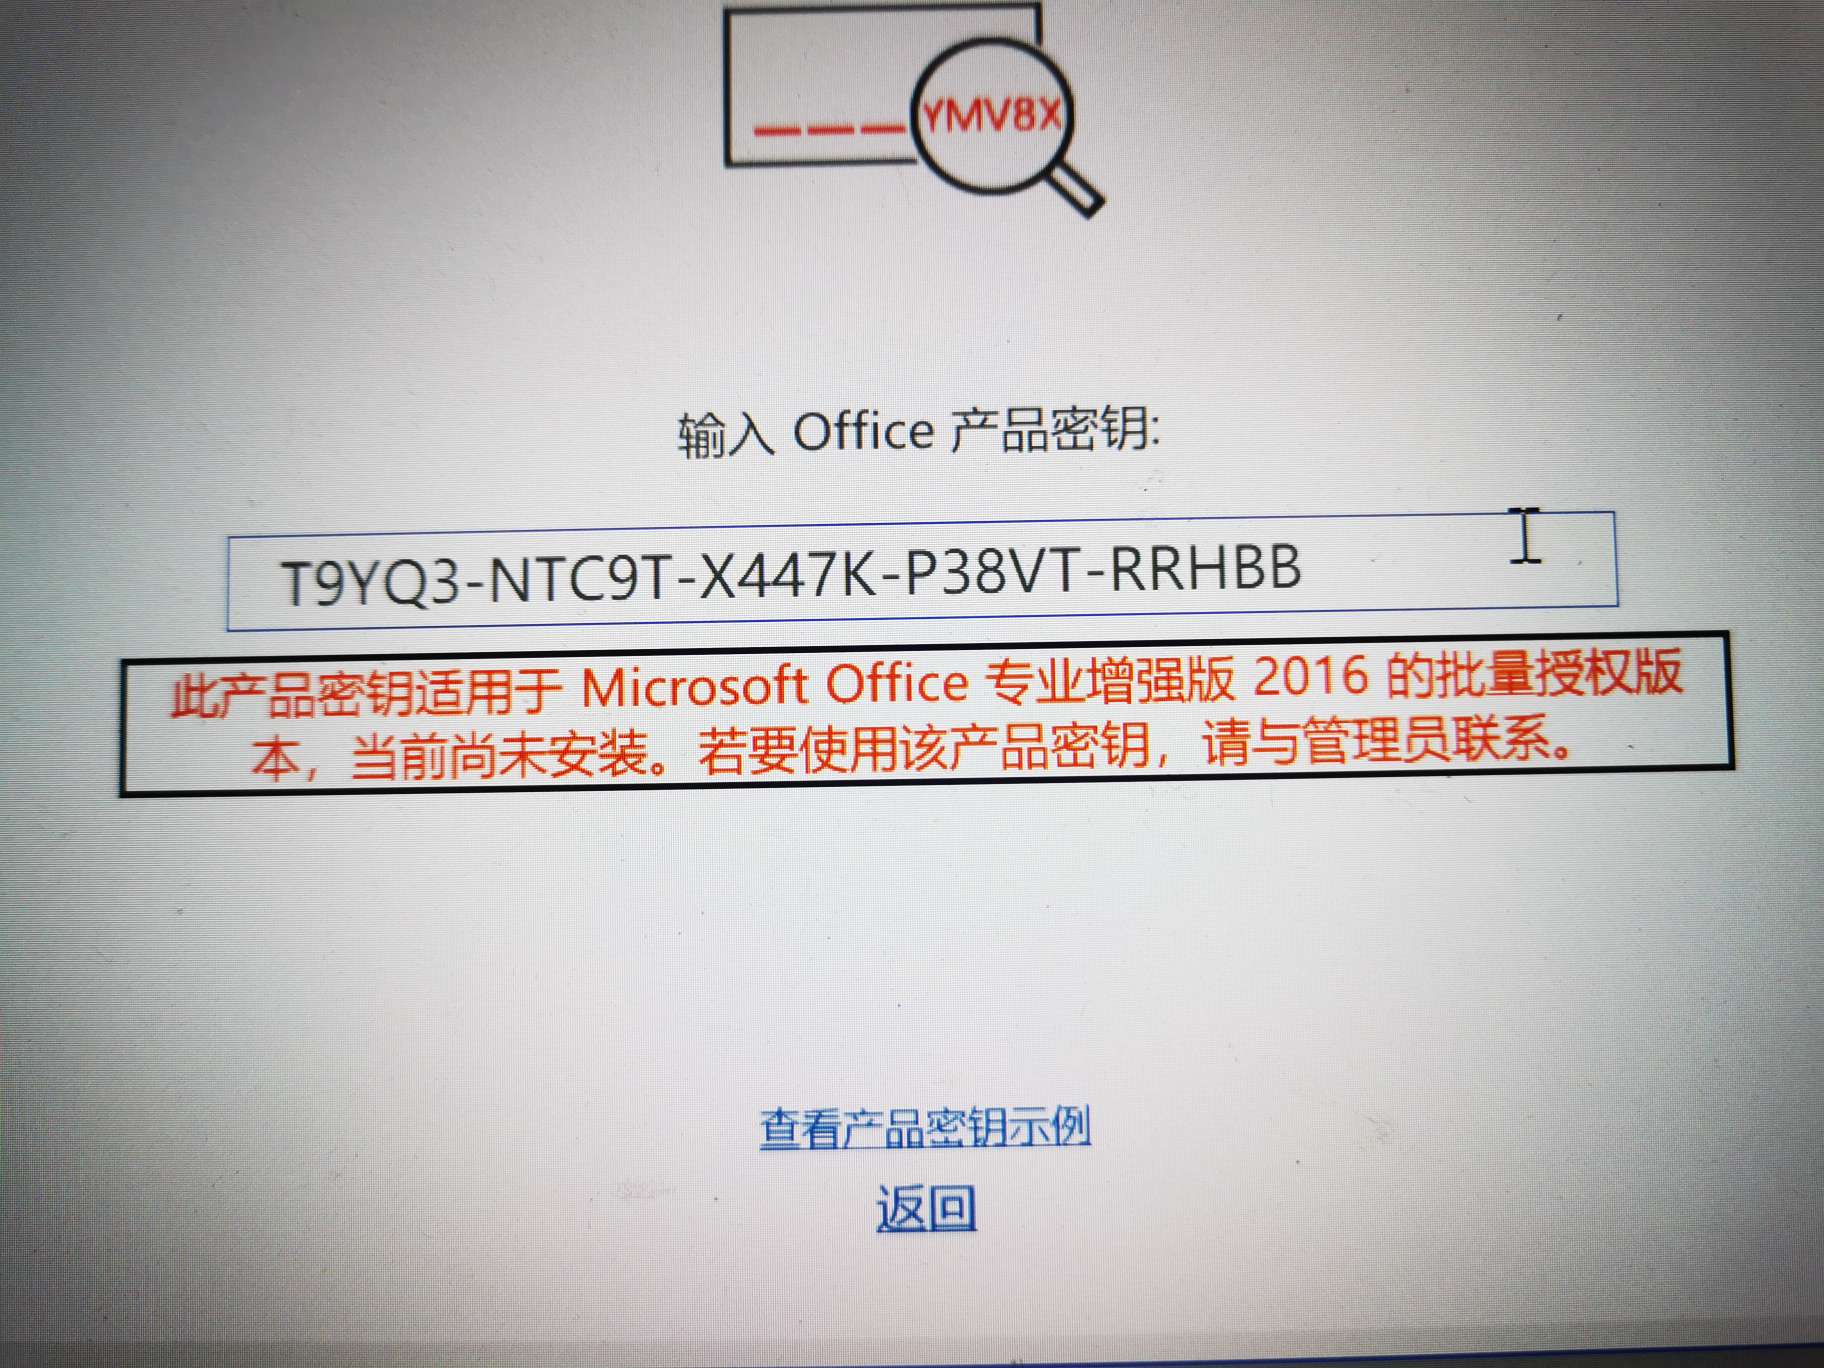 Microsoft Office 2016 Pro 激活密钥